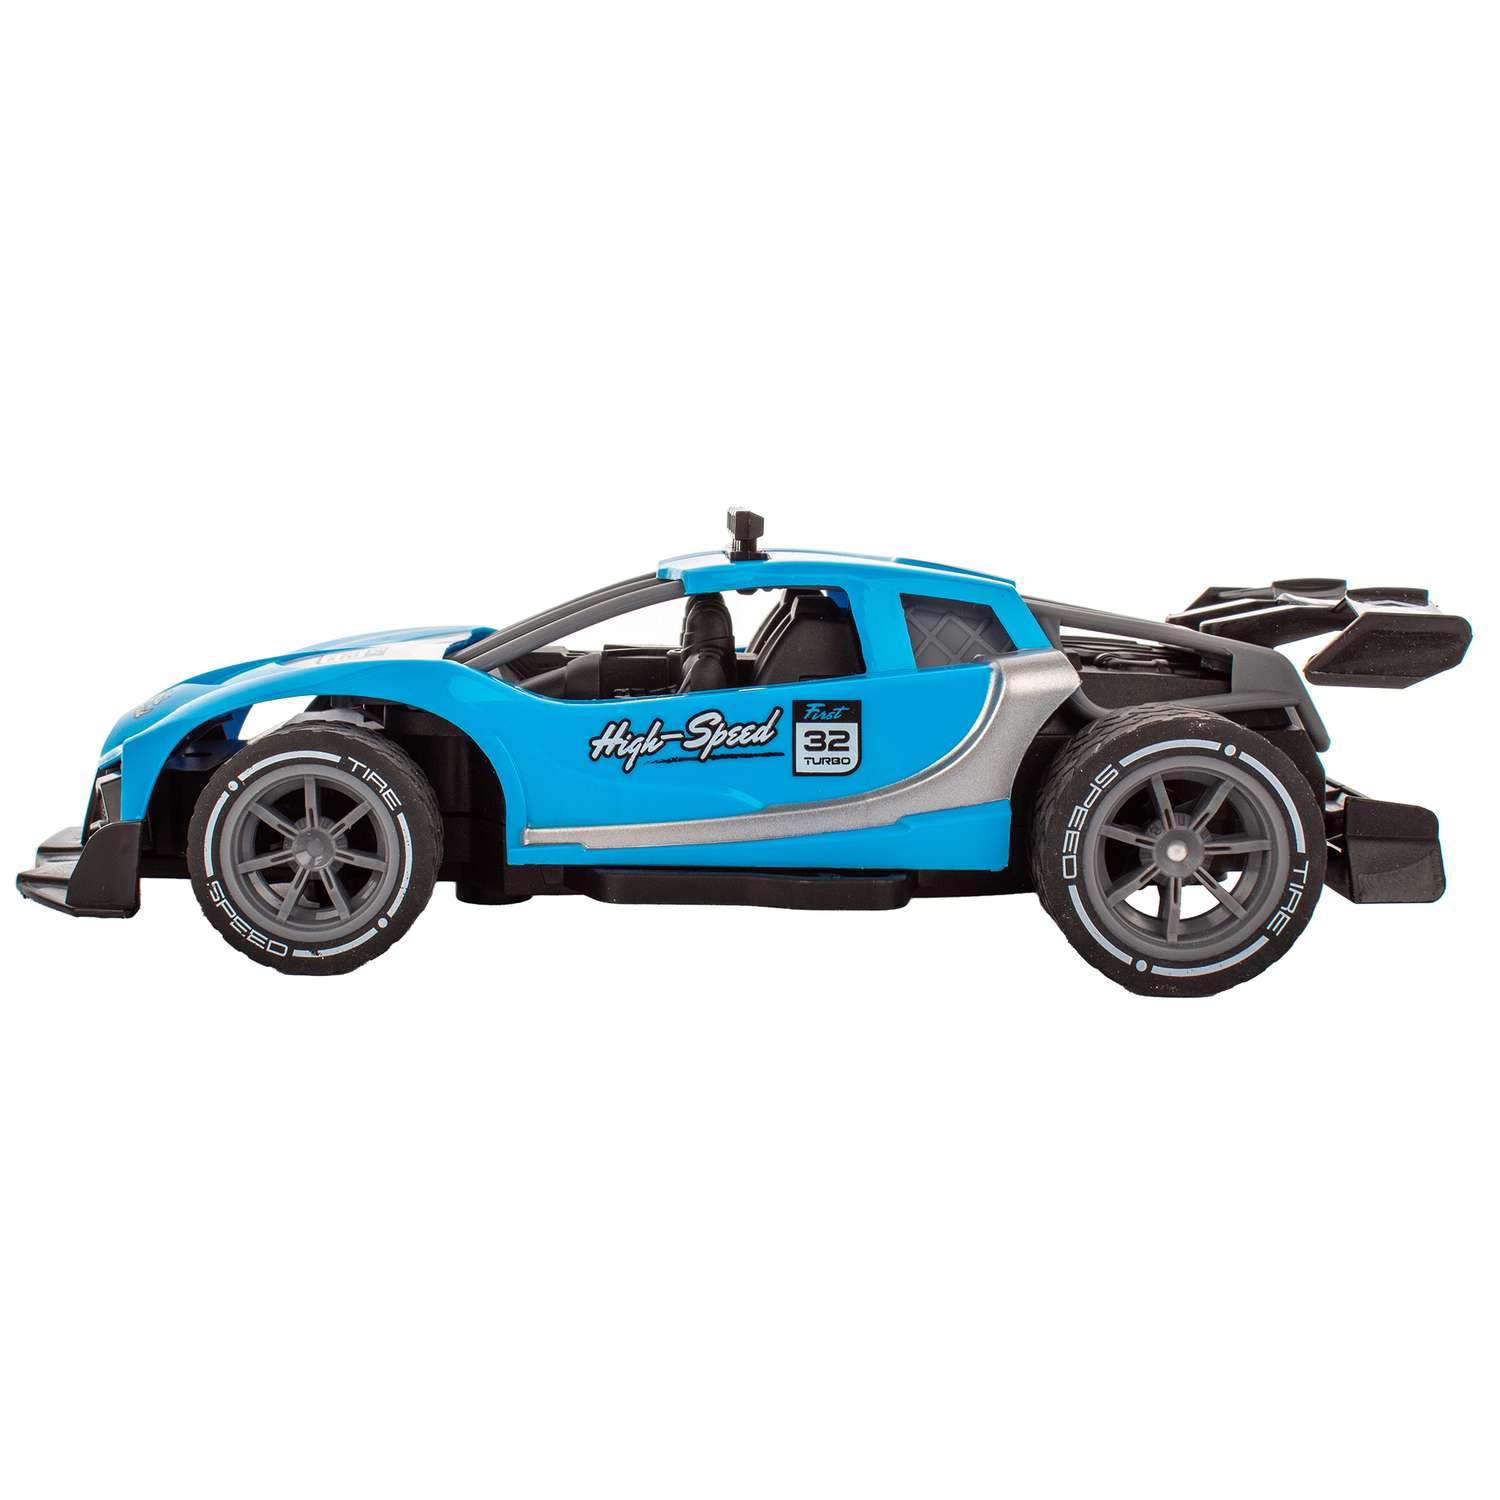 Машинка KiddieDrive Sport Racer радиоуправляемая синяя - фото 3